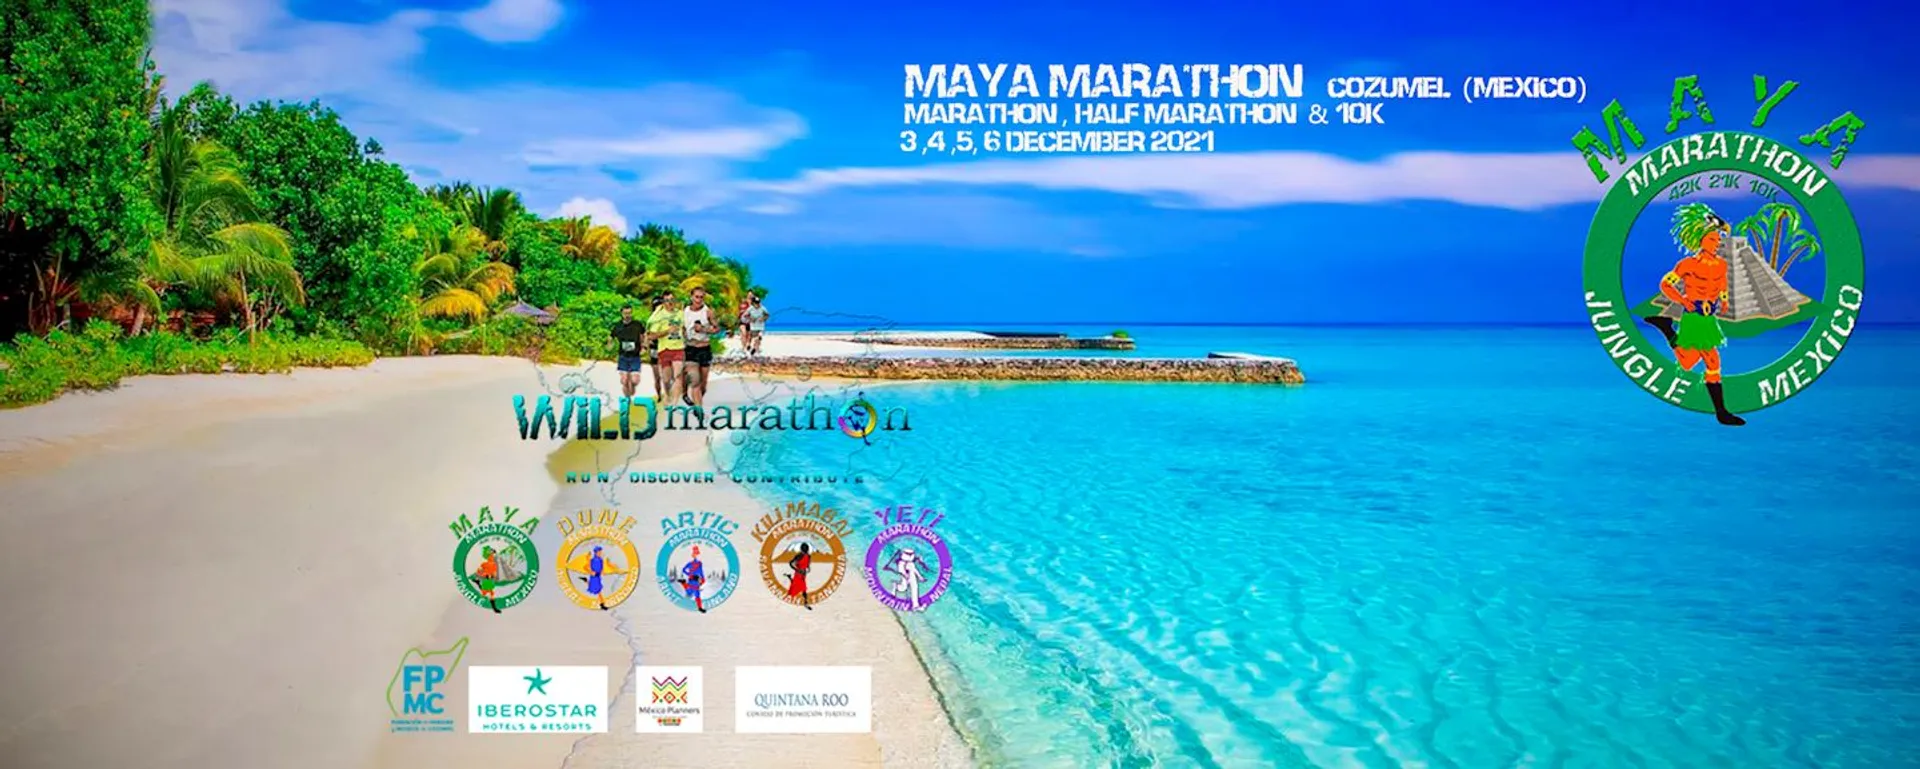 Maya Marathon. Run in the jungle